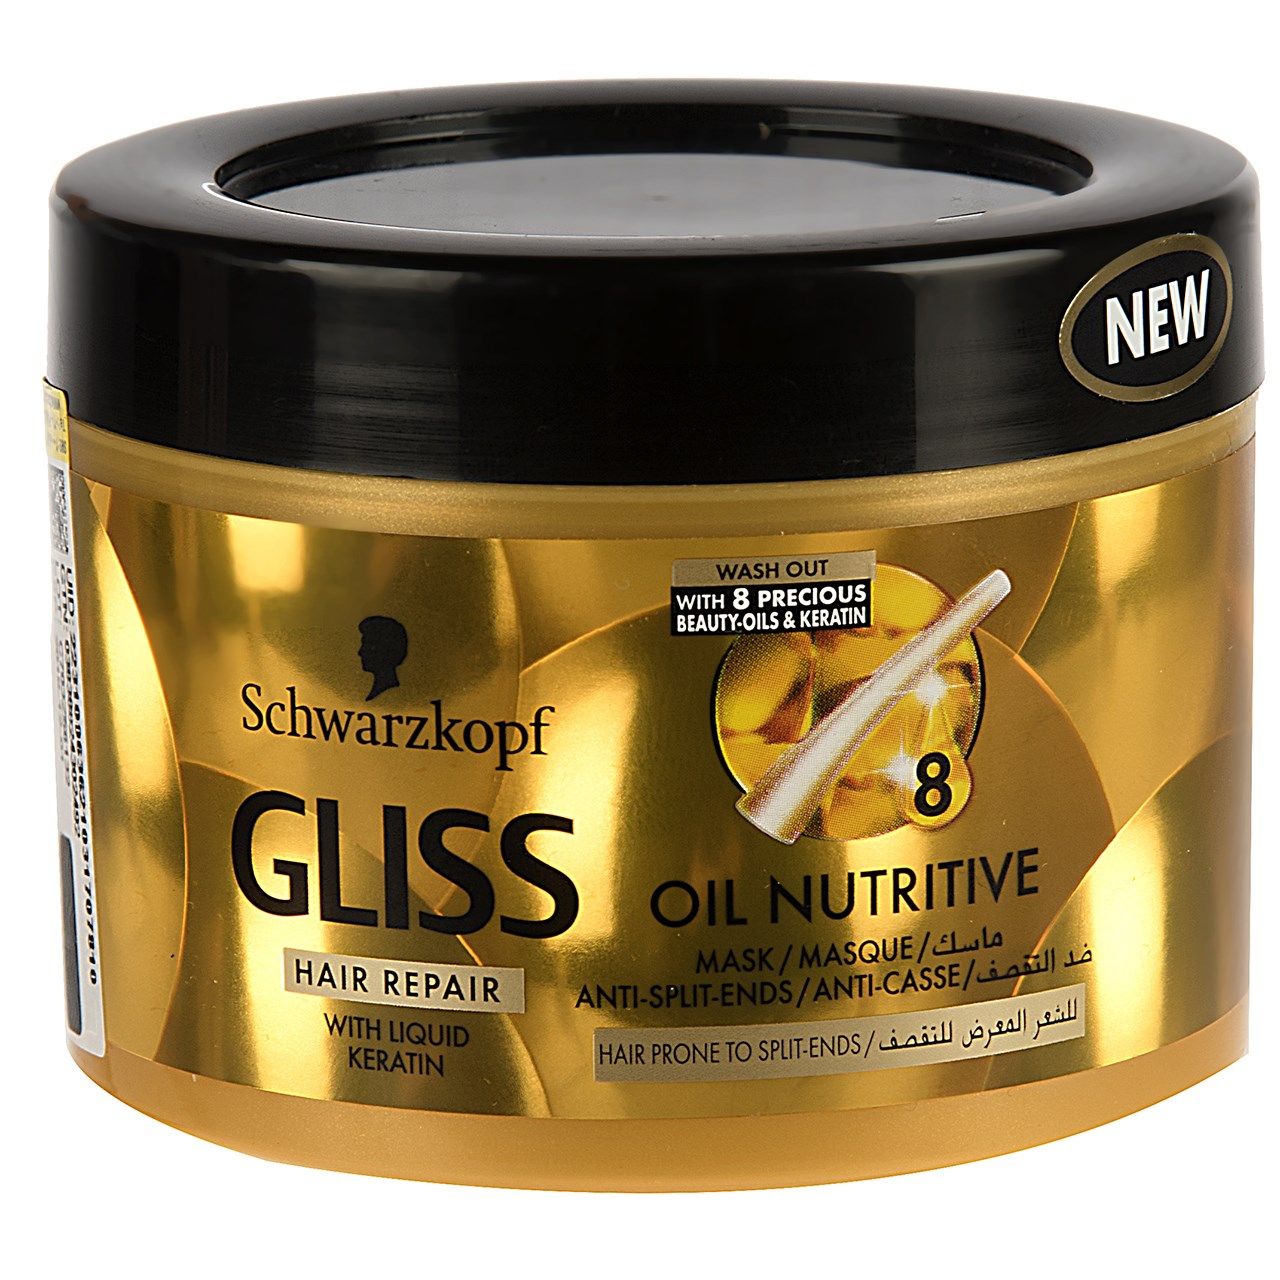 روغن ترمیم کننده و مغذی مو گلیس سری Hair Repair مدل Oil Nutritive حجم 200 میلی لیتر -  - 1